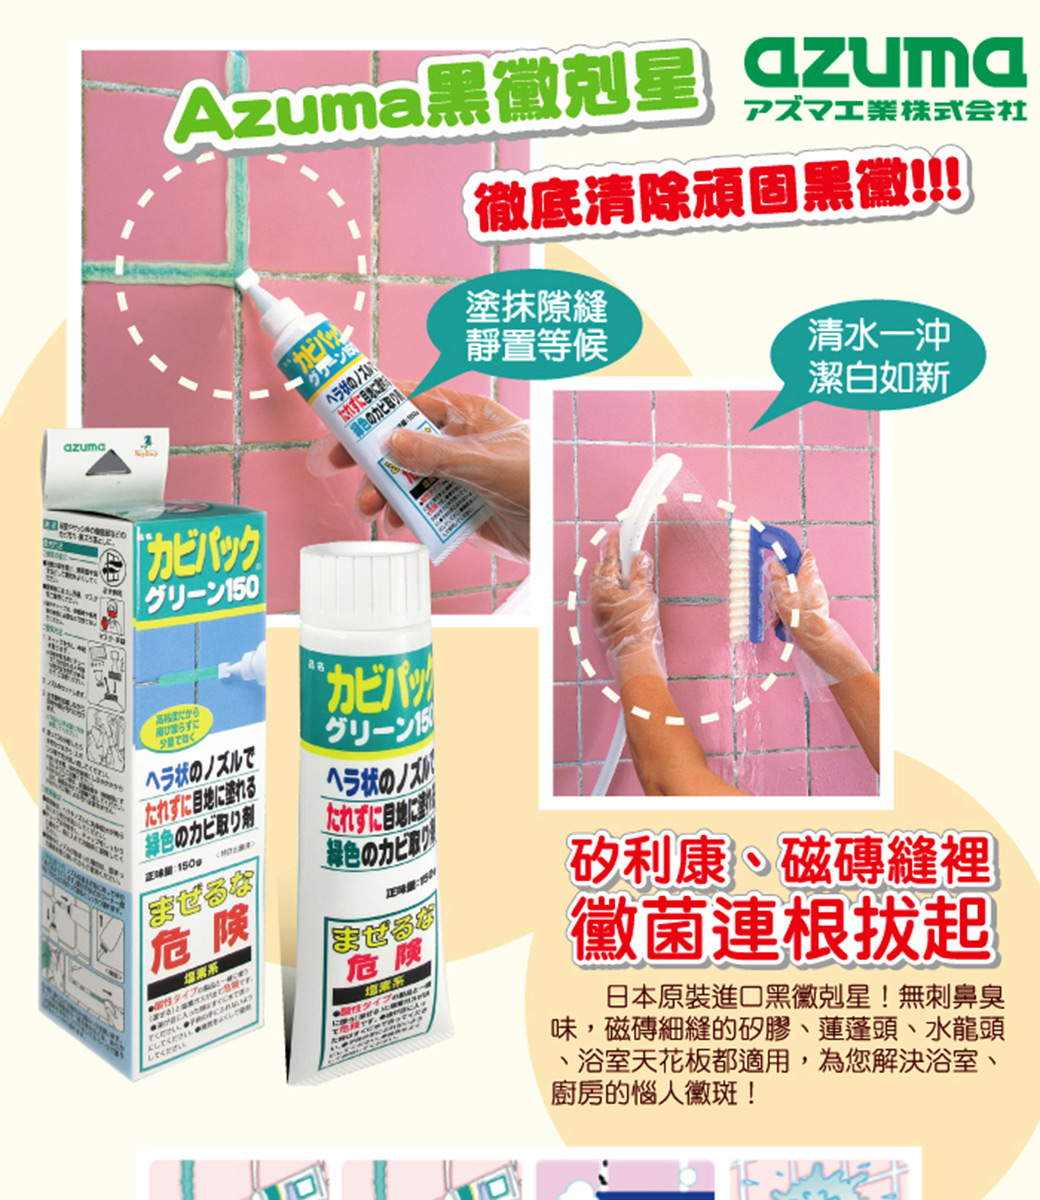 【AZUMA】日本原裝黑黴剋星150g/入 去霉根 強效除霉凝膠 持久防霉